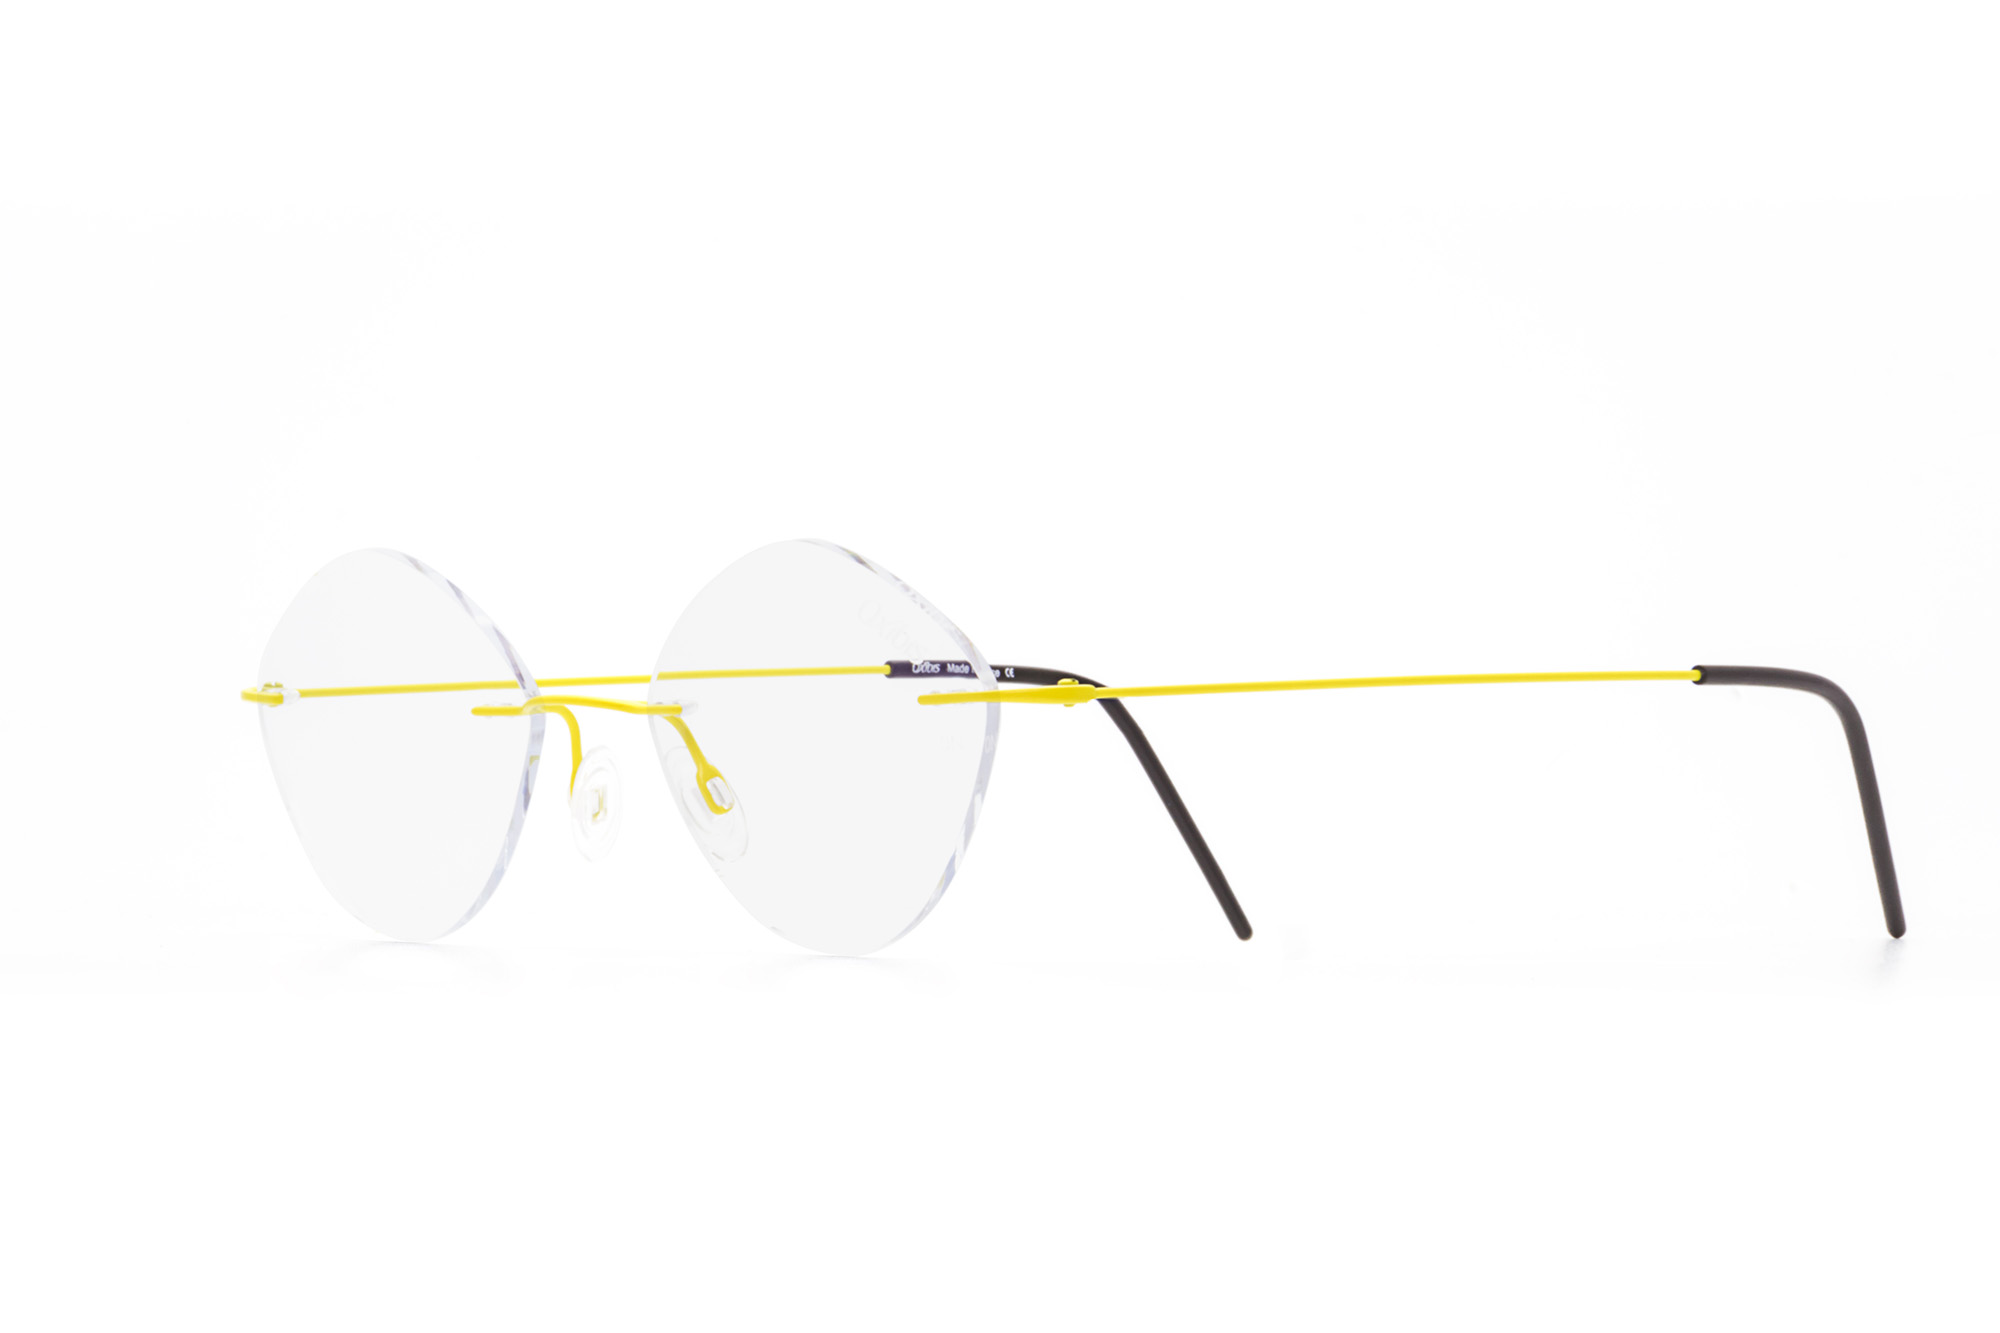 Oxibis Zef ZP7C11 47 küçük ekartman neon sarı renkli üçgen model çerçevesiz numaralı unisex optik gözlük çerçevesi